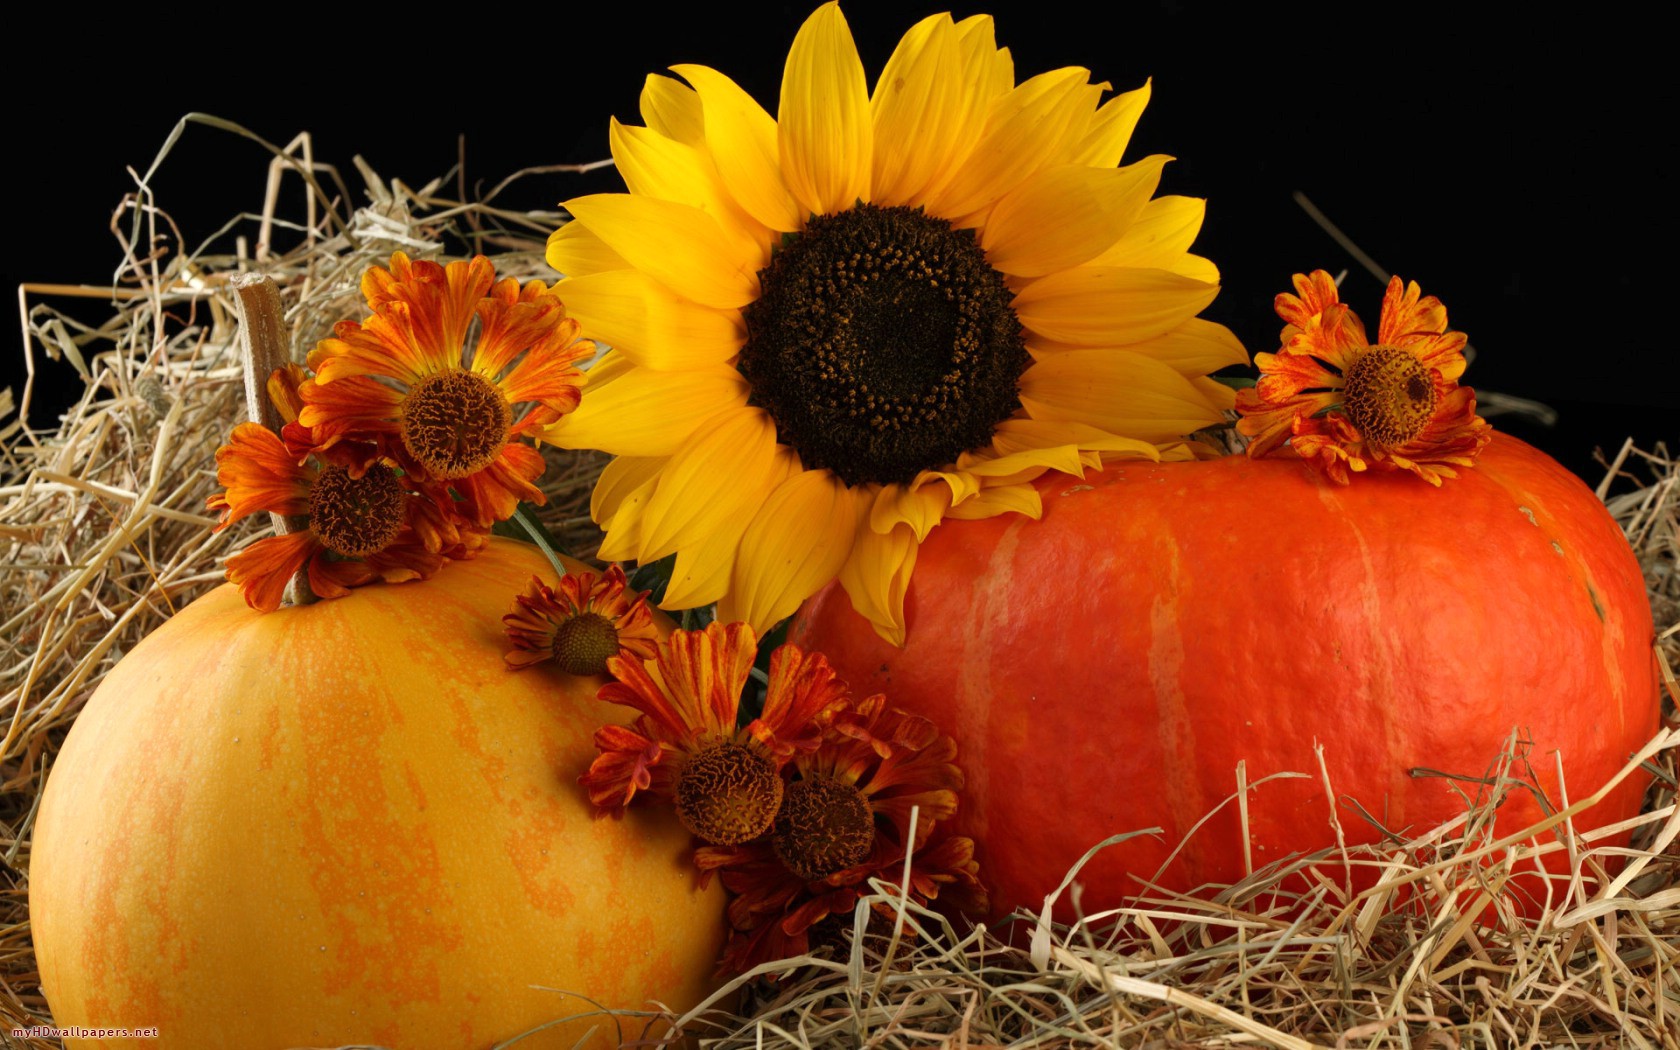 Sunflower And Pumpkins Desktop Wallpaper HD